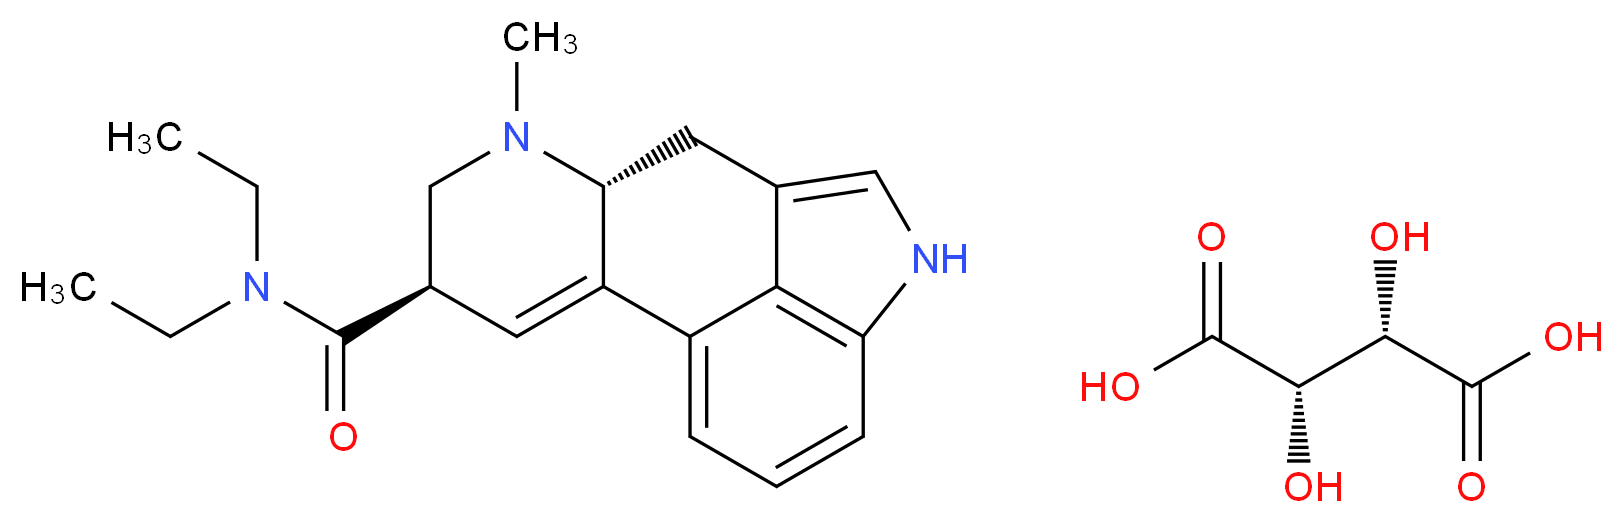 麥角酸二乙醯胺